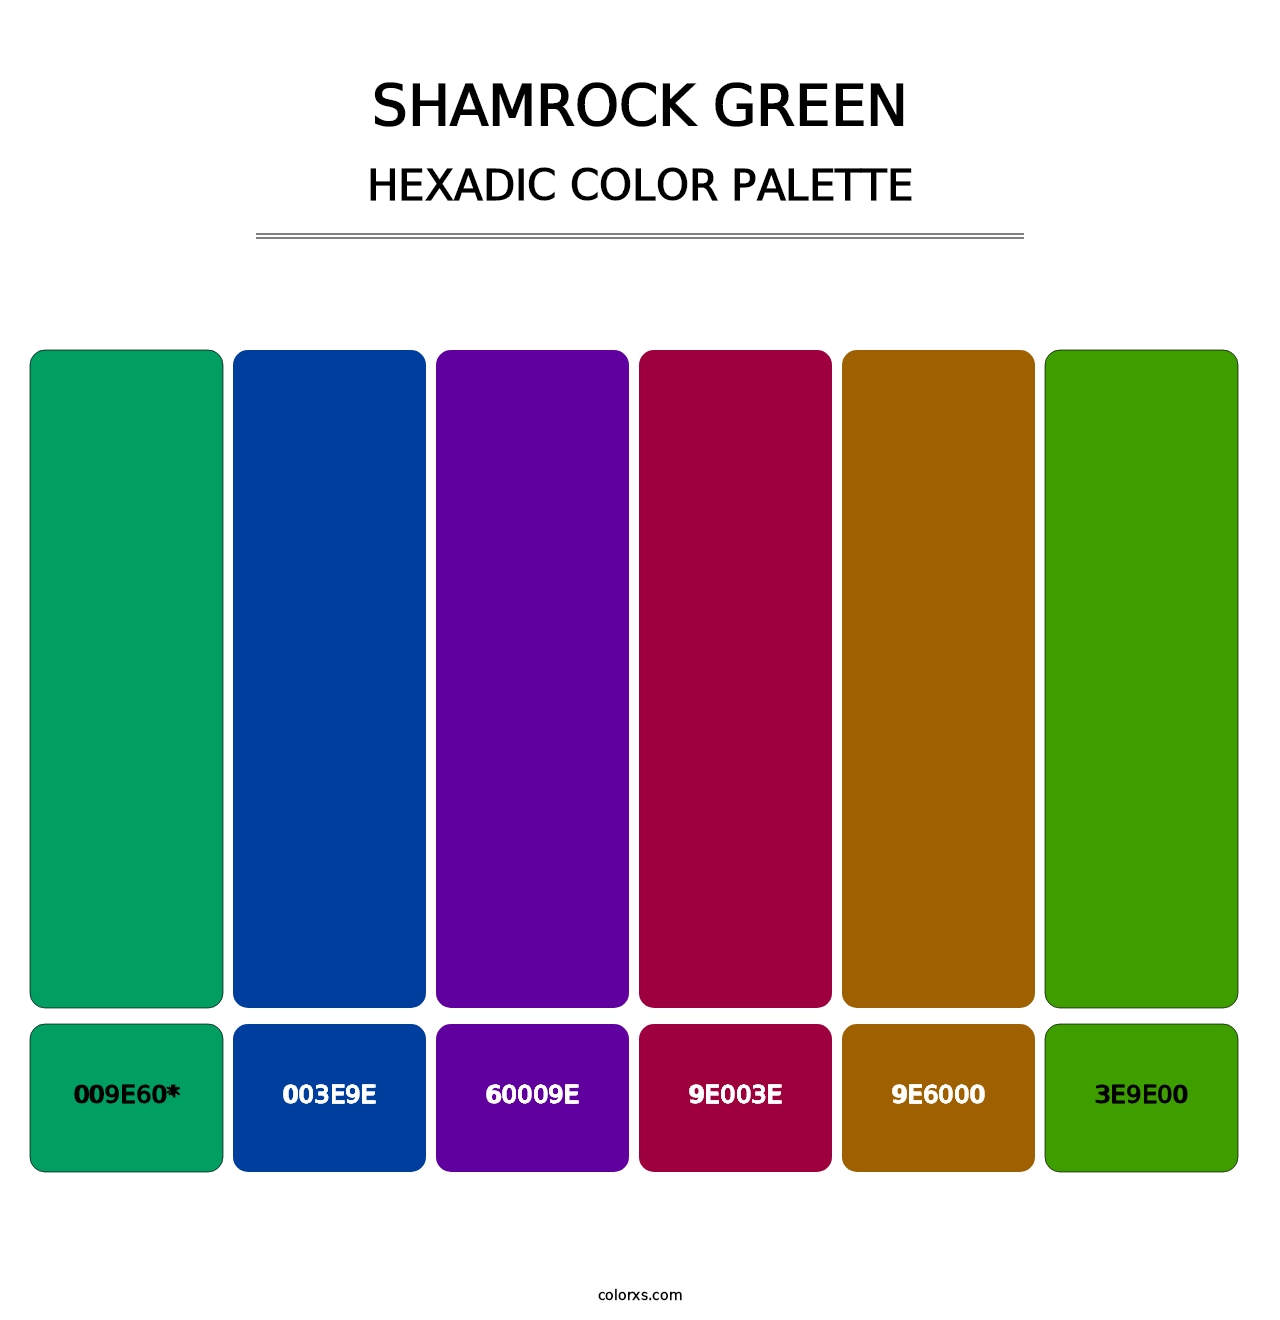 Shamrock Green - Hexadic Color Palette